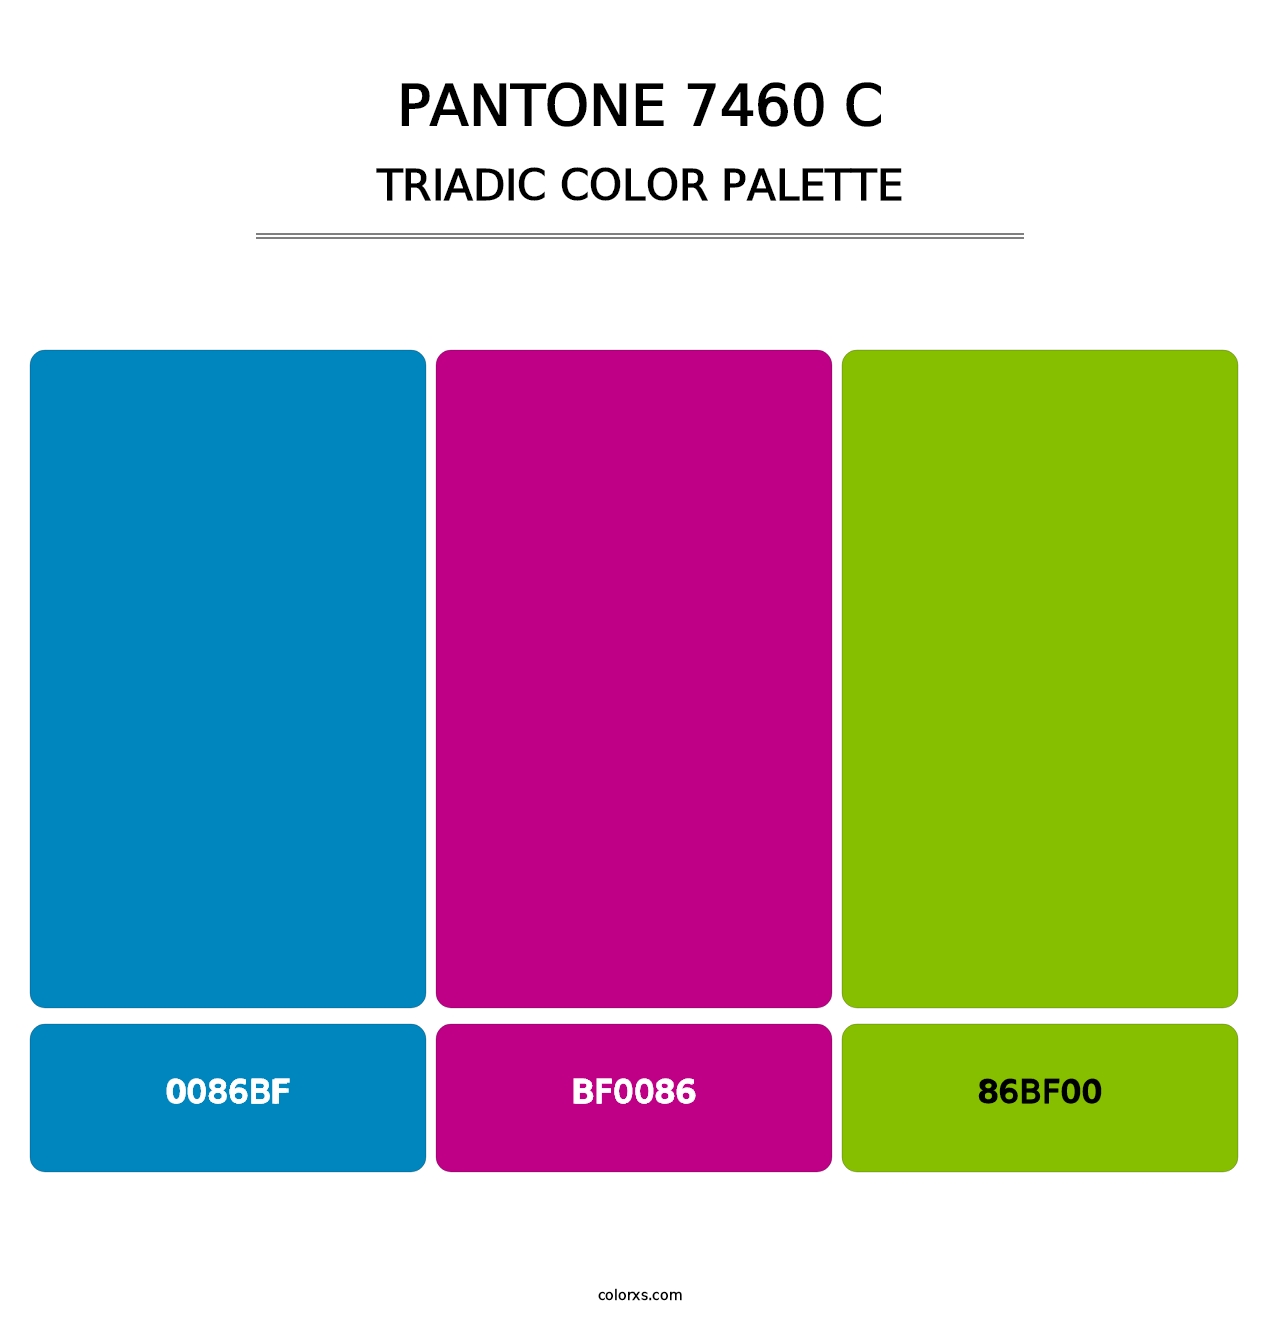 PANTONE 7460 C - Triadic Color Palette